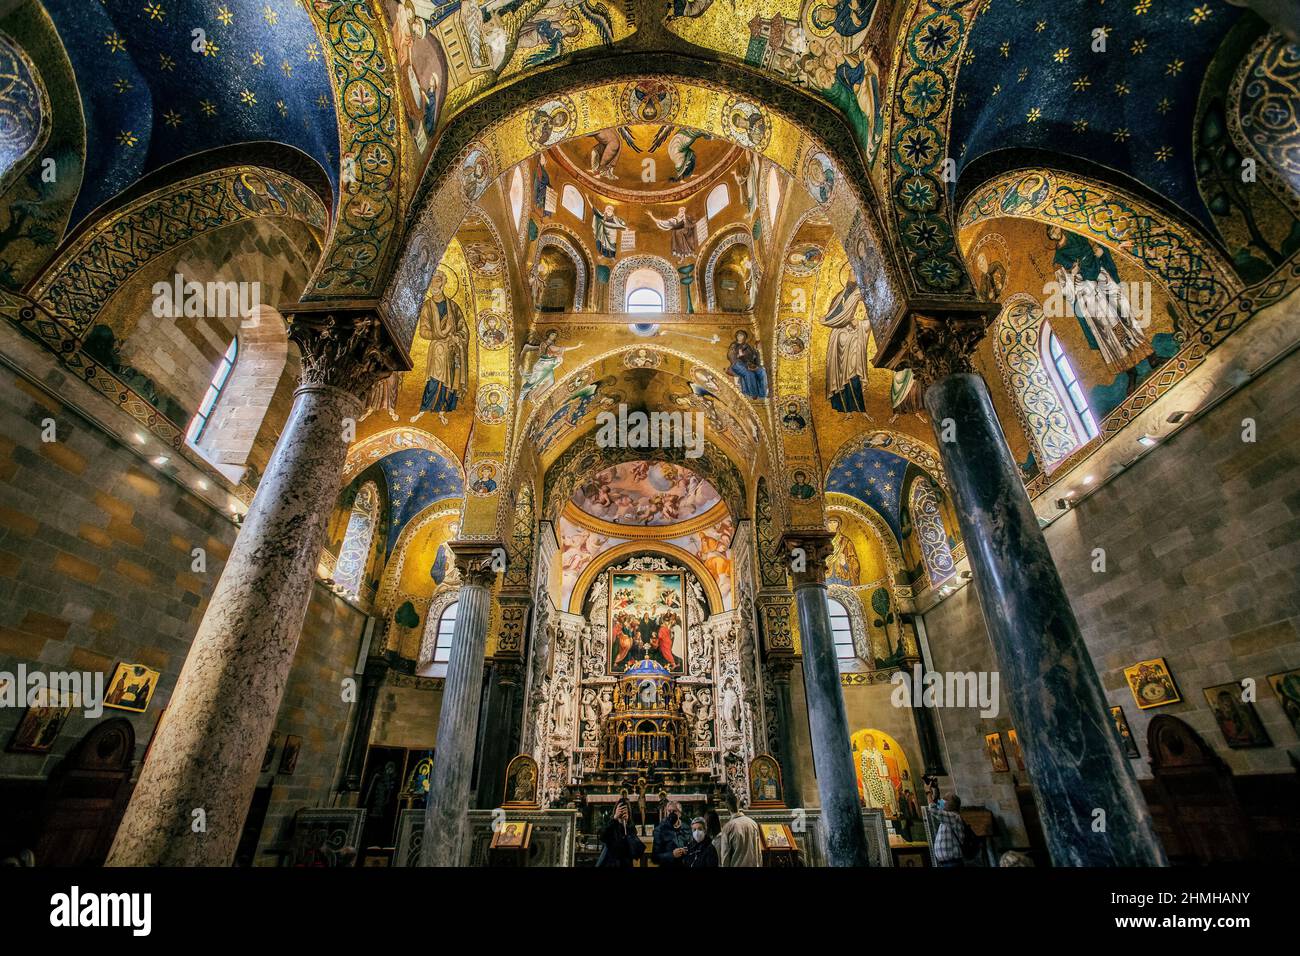 Intérieur avec mosaïques d'or de l'église de Santa Maria dell'Ammiraglio (église Admiral), Palerme, Sicile, Italie Banque D'Images